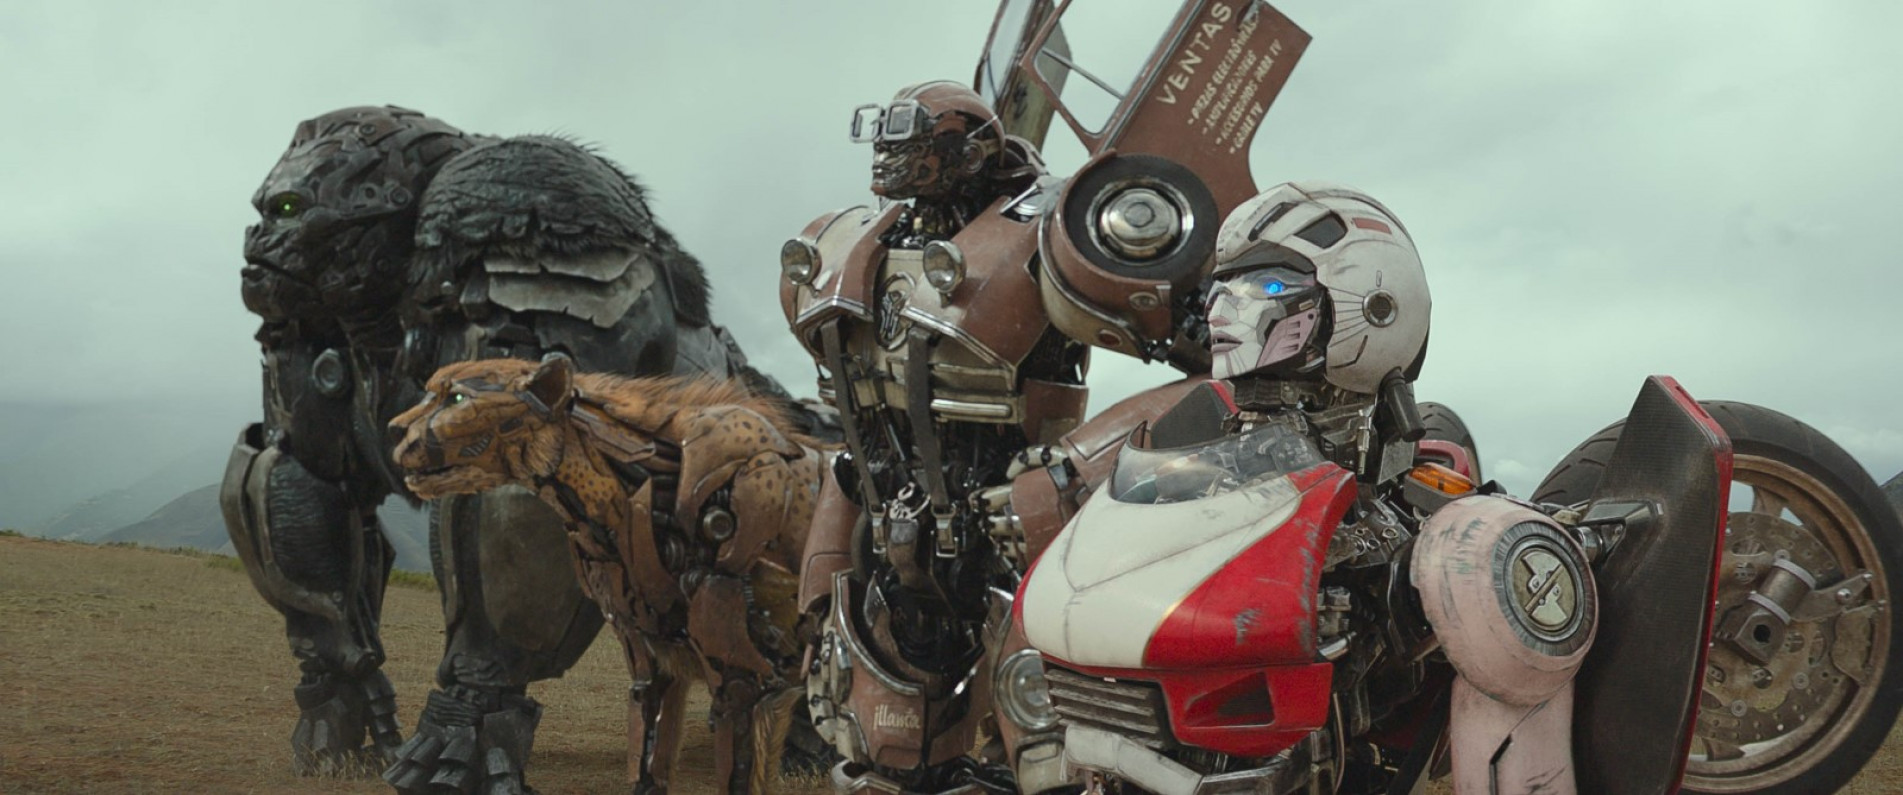 7º filme de 'Transformers' chega às telonas sorocabanas